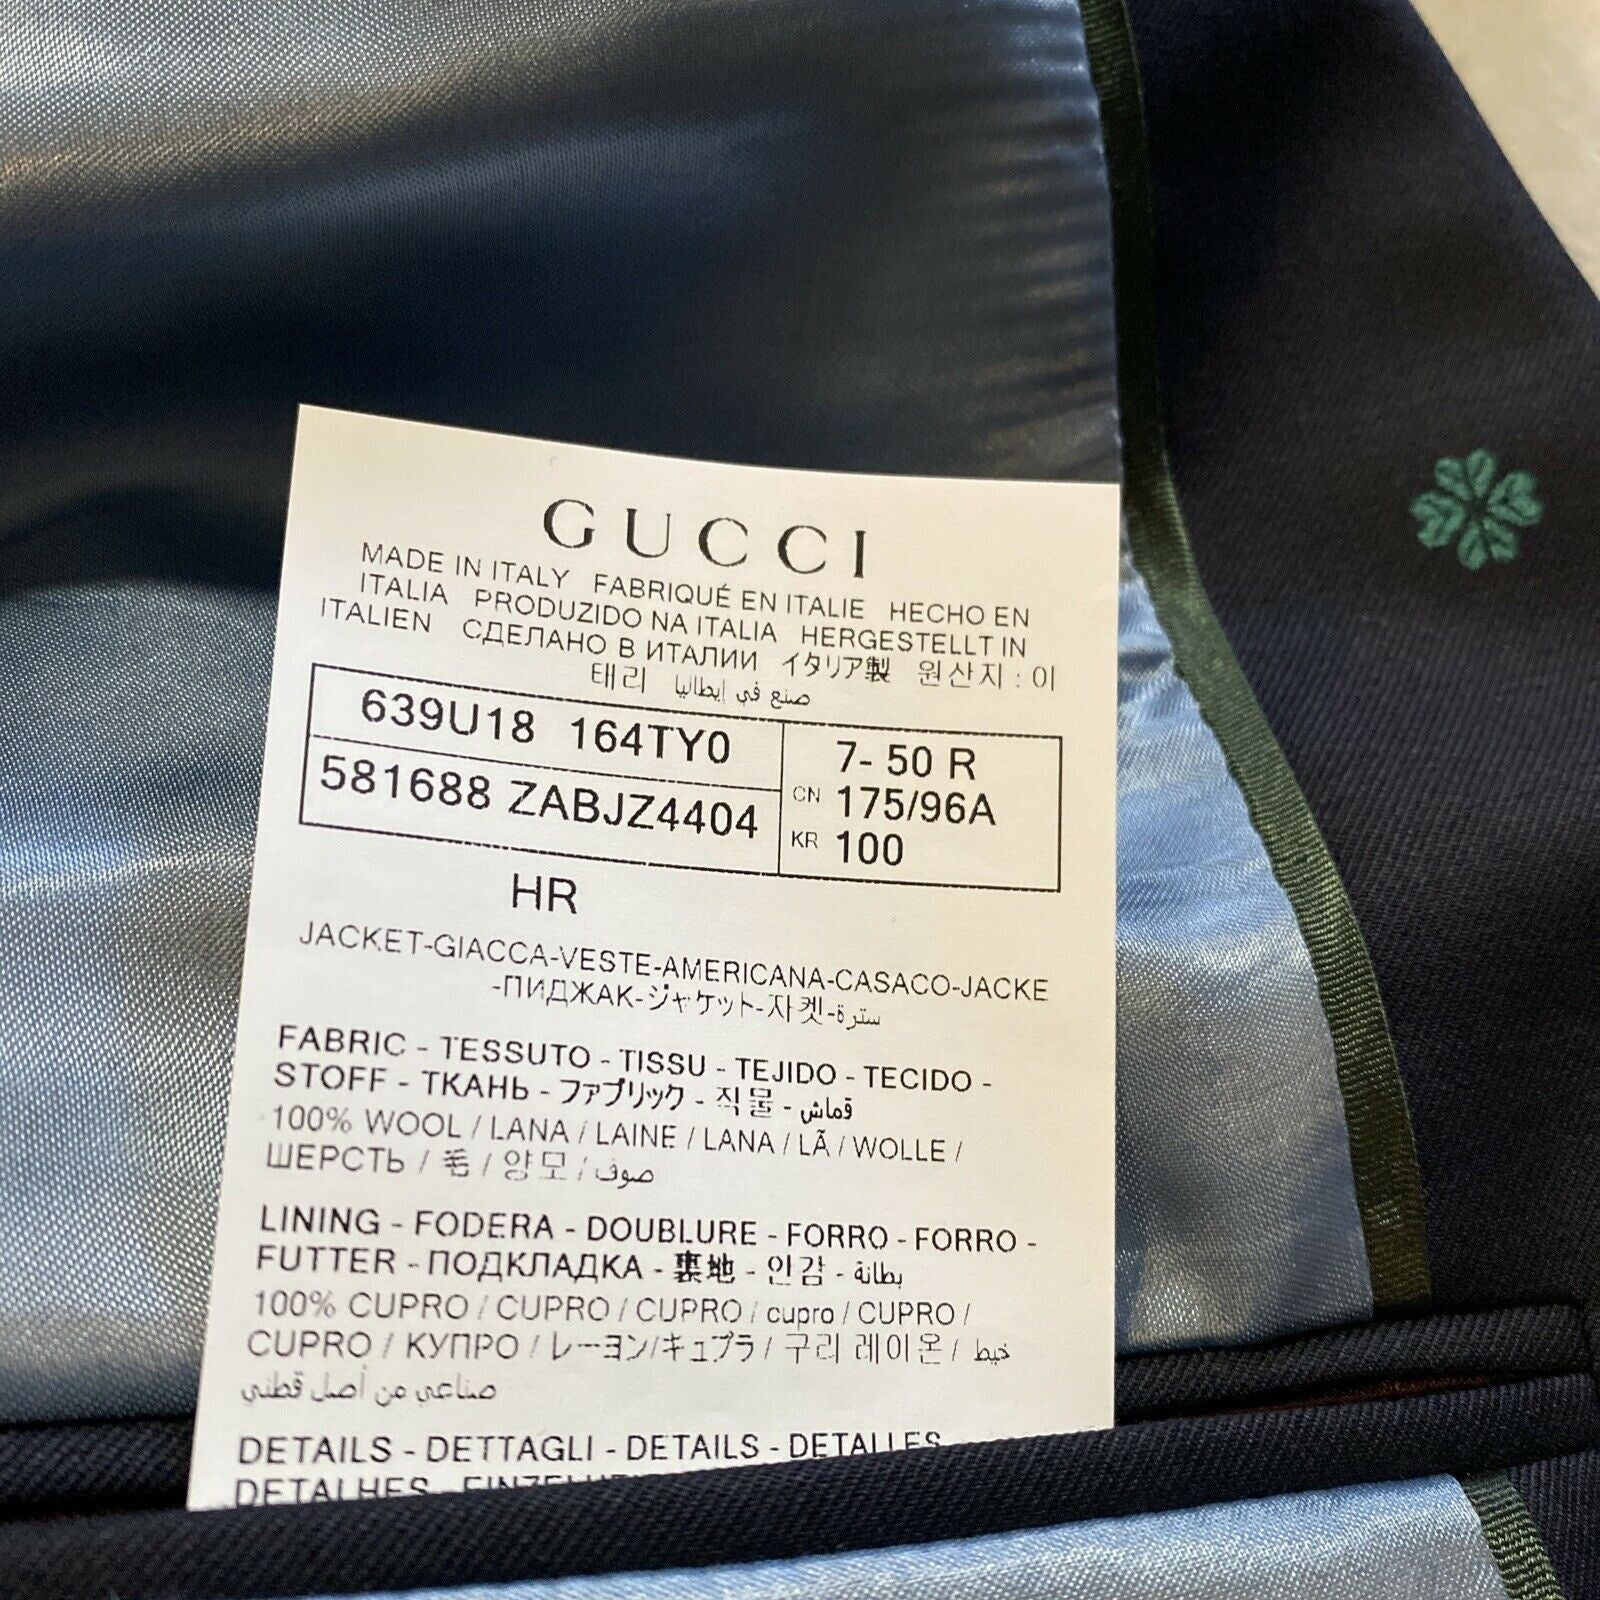 Neuer 4800 $ Gucci Herrenanzug GG Monogram Navy 40R US (50R Eu) Italien